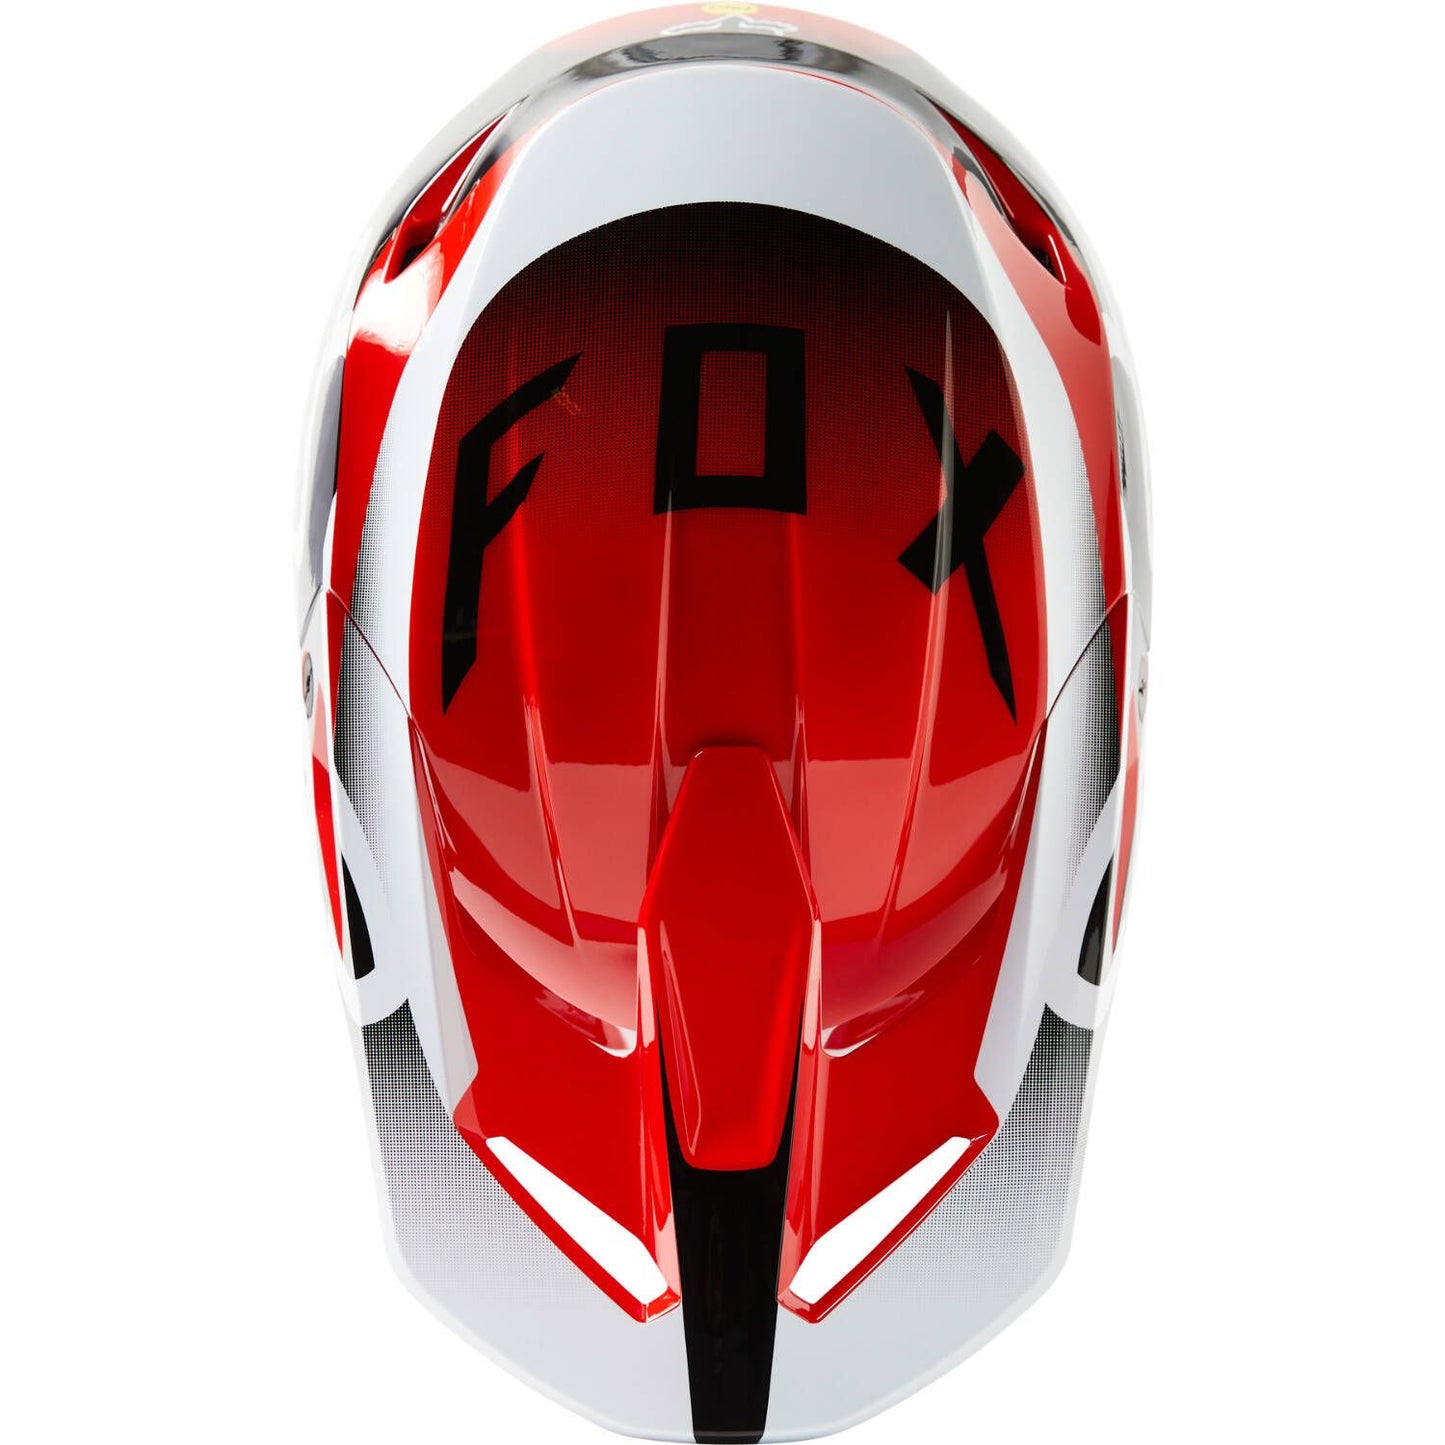 Fox V1 Leed MX Helmet - Red